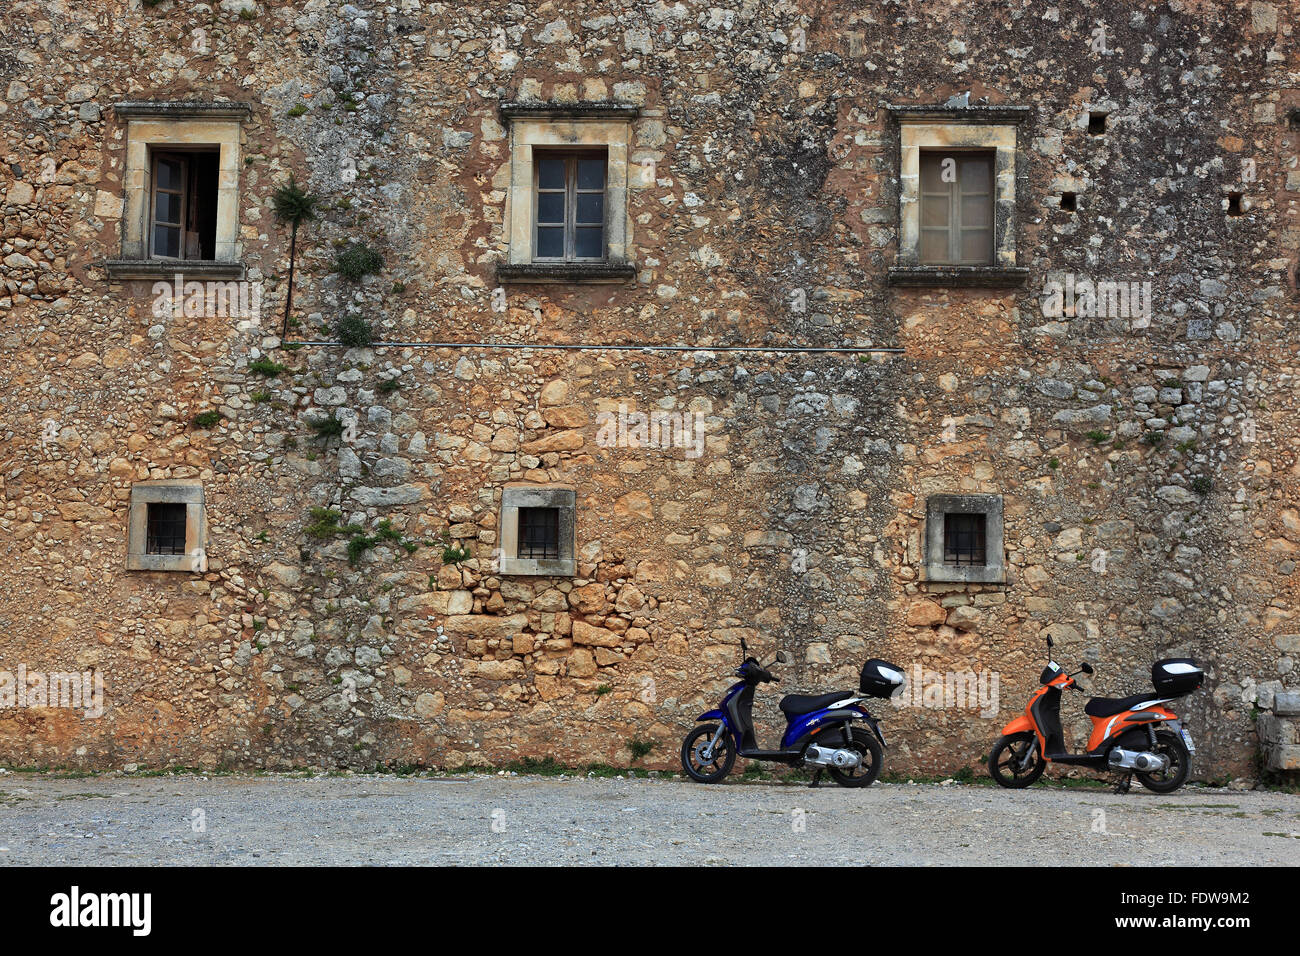 Kreta, zwei Motorroller in der äußeren Fassade eines alten Gebäudes Stockfoto